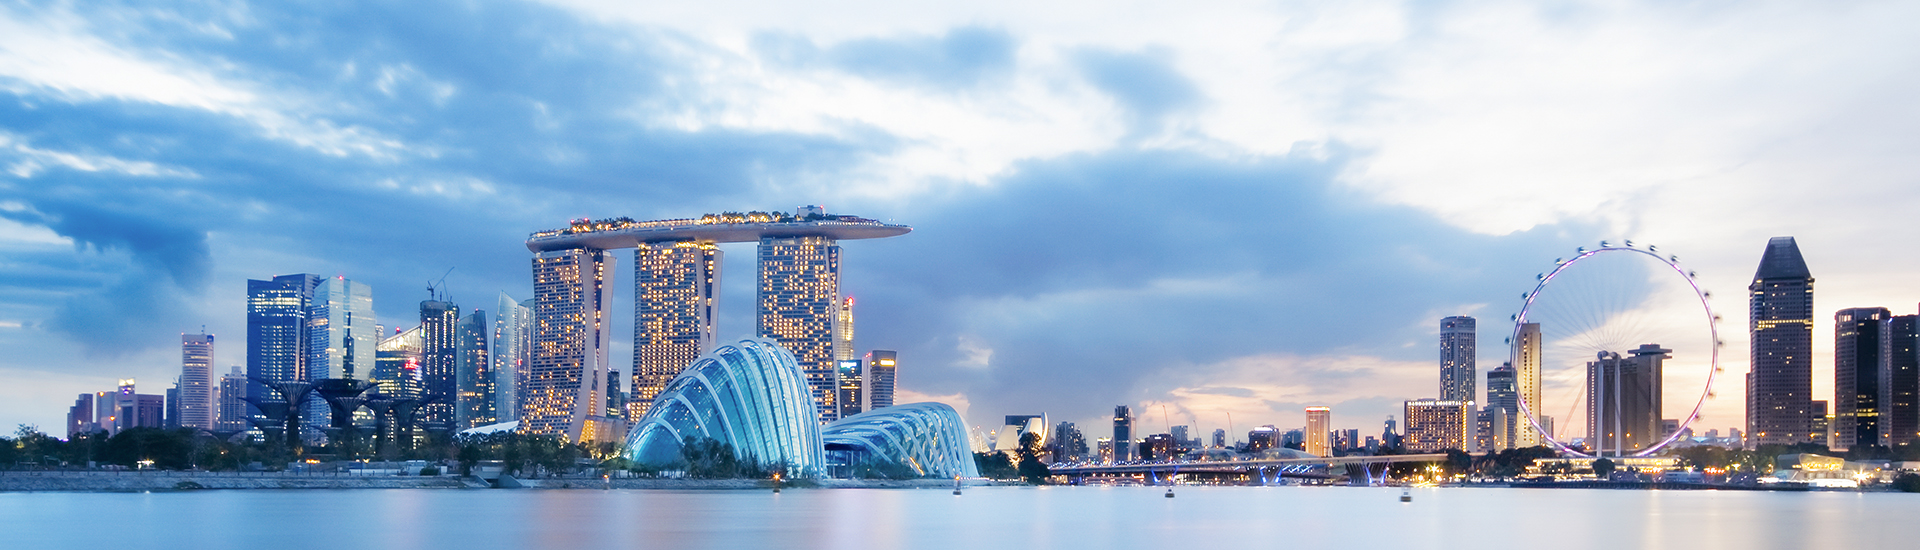 singapore city skyline